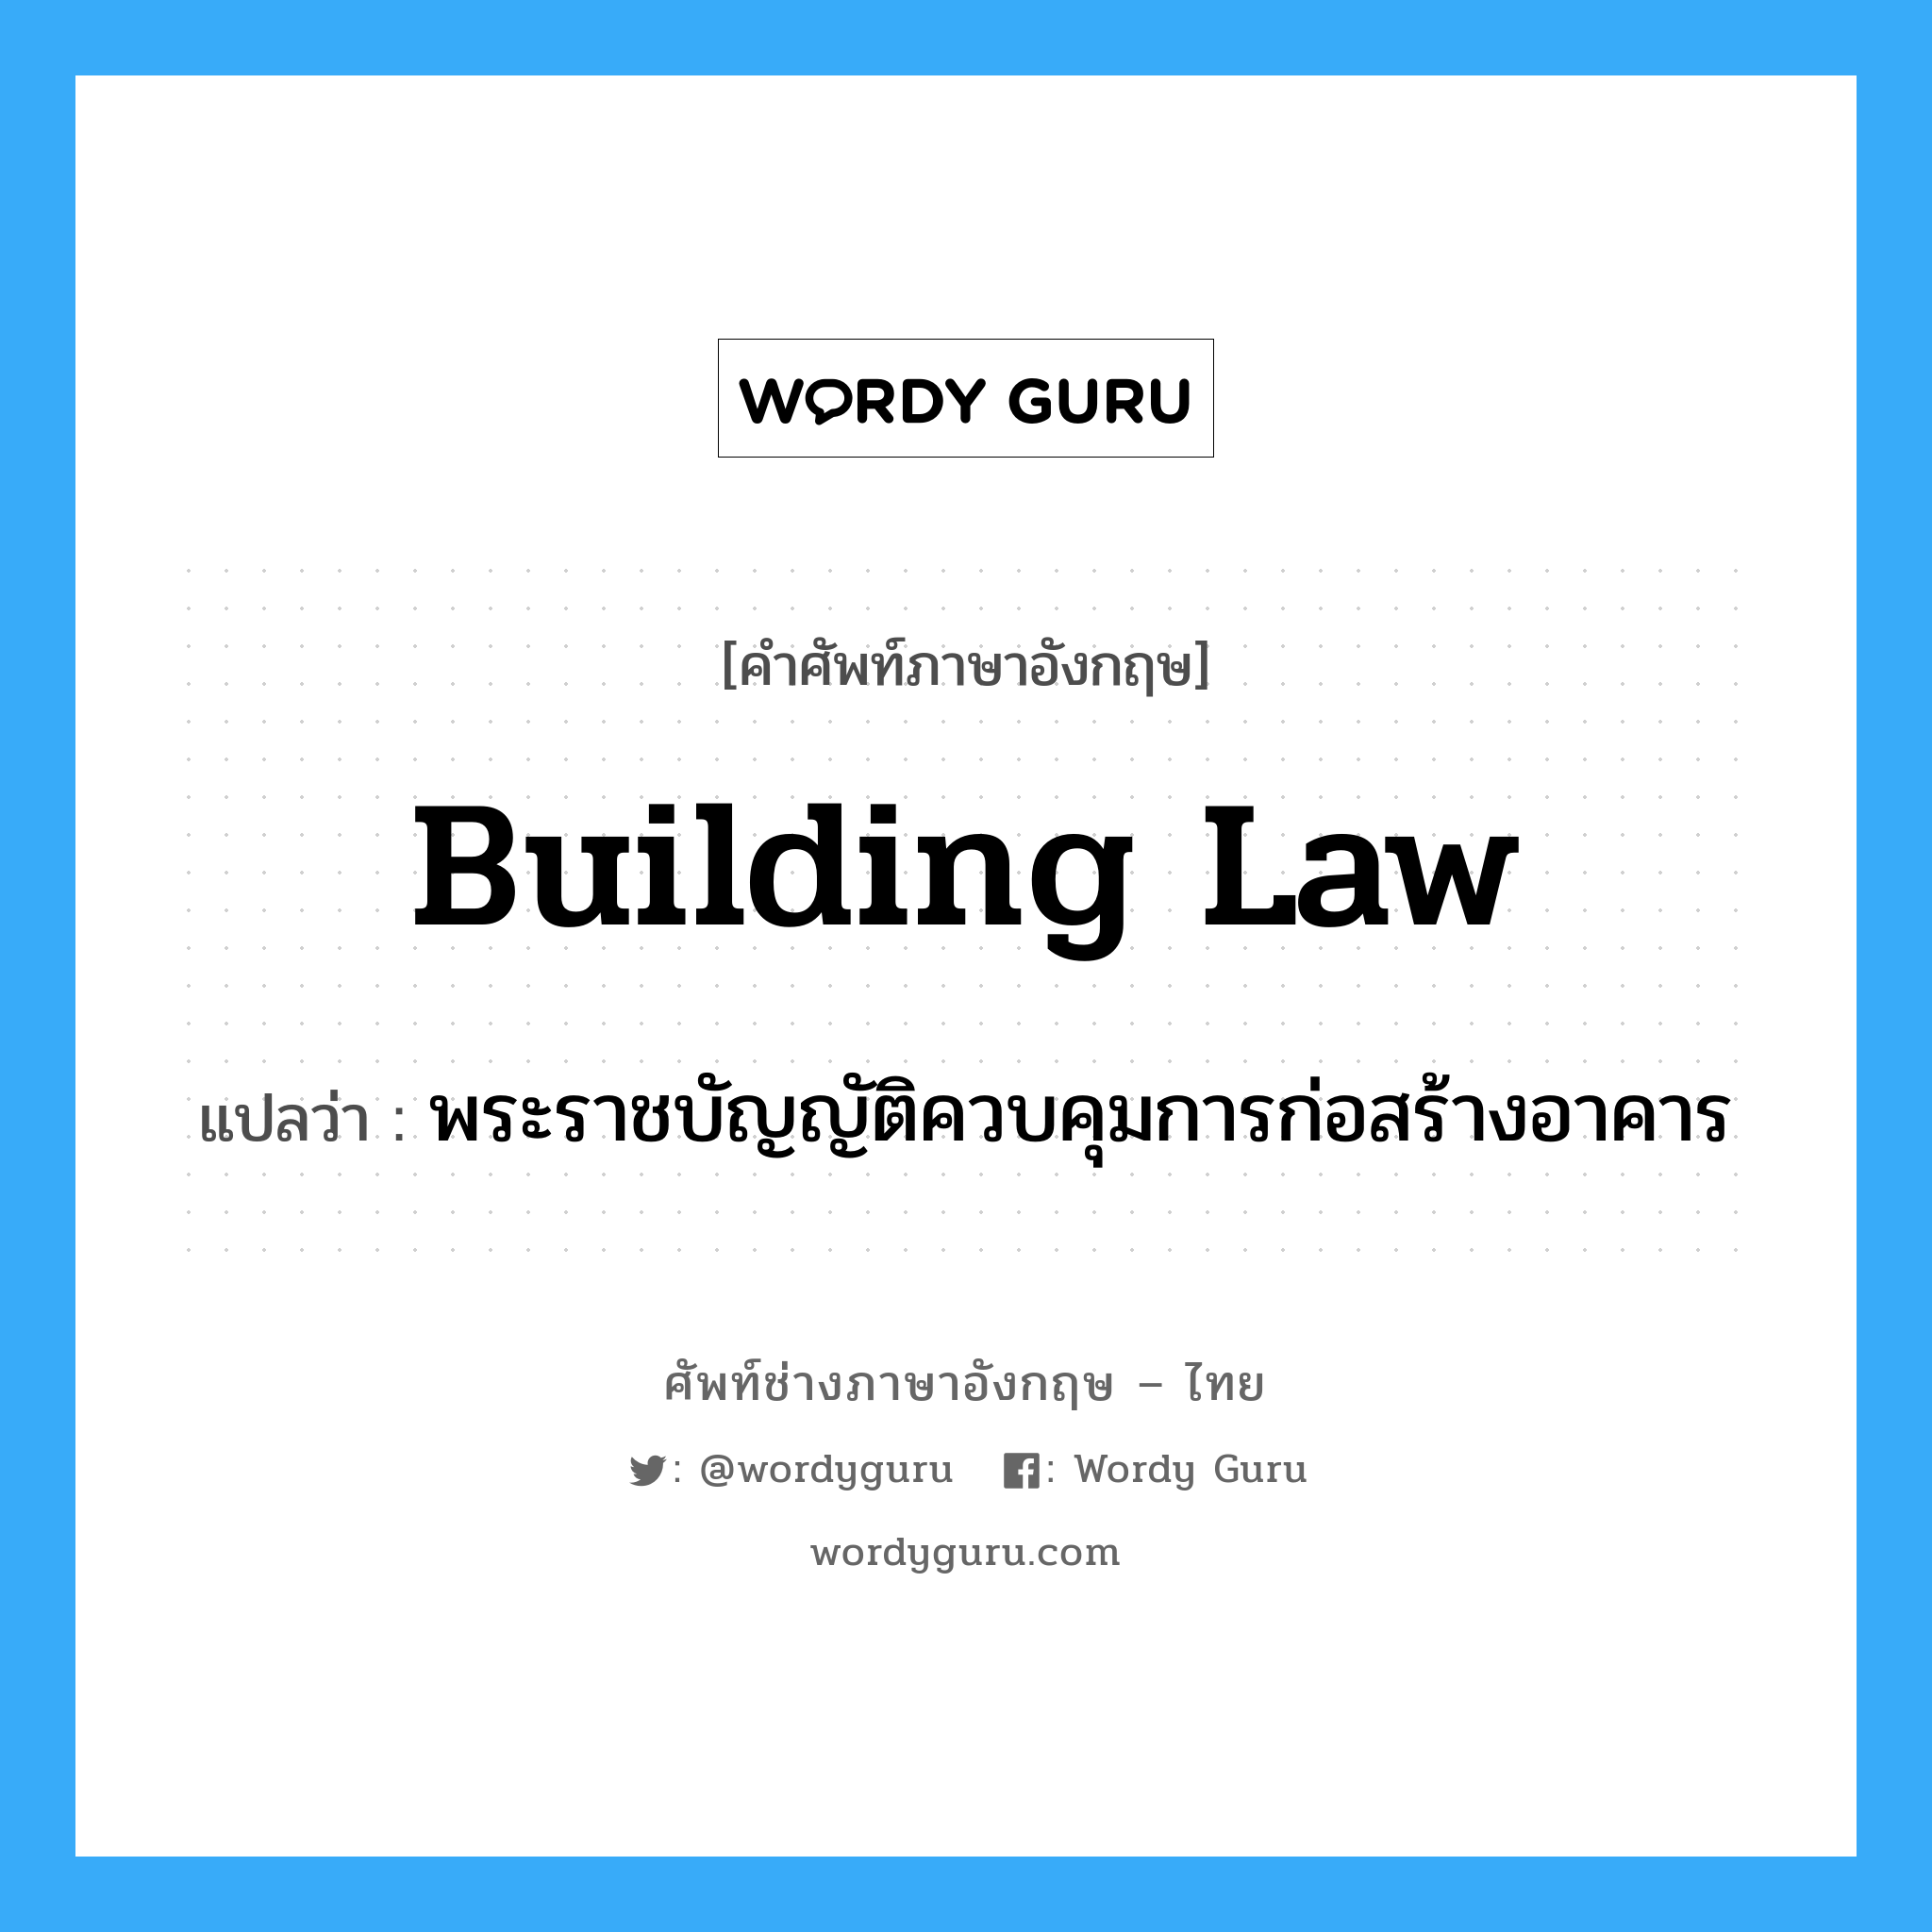 พระราชบัญญัติควบคุมการก่อสร้างอาคาร ภาษาอังกฤษ?, คำศัพท์ช่างภาษาอังกฤษ - ไทย พระราชบัญญัติควบคุมการก่อสร้างอาคาร คำศัพท์ภาษาอังกฤษ พระราชบัญญัติควบคุมการก่อสร้างอาคาร แปลว่า building law